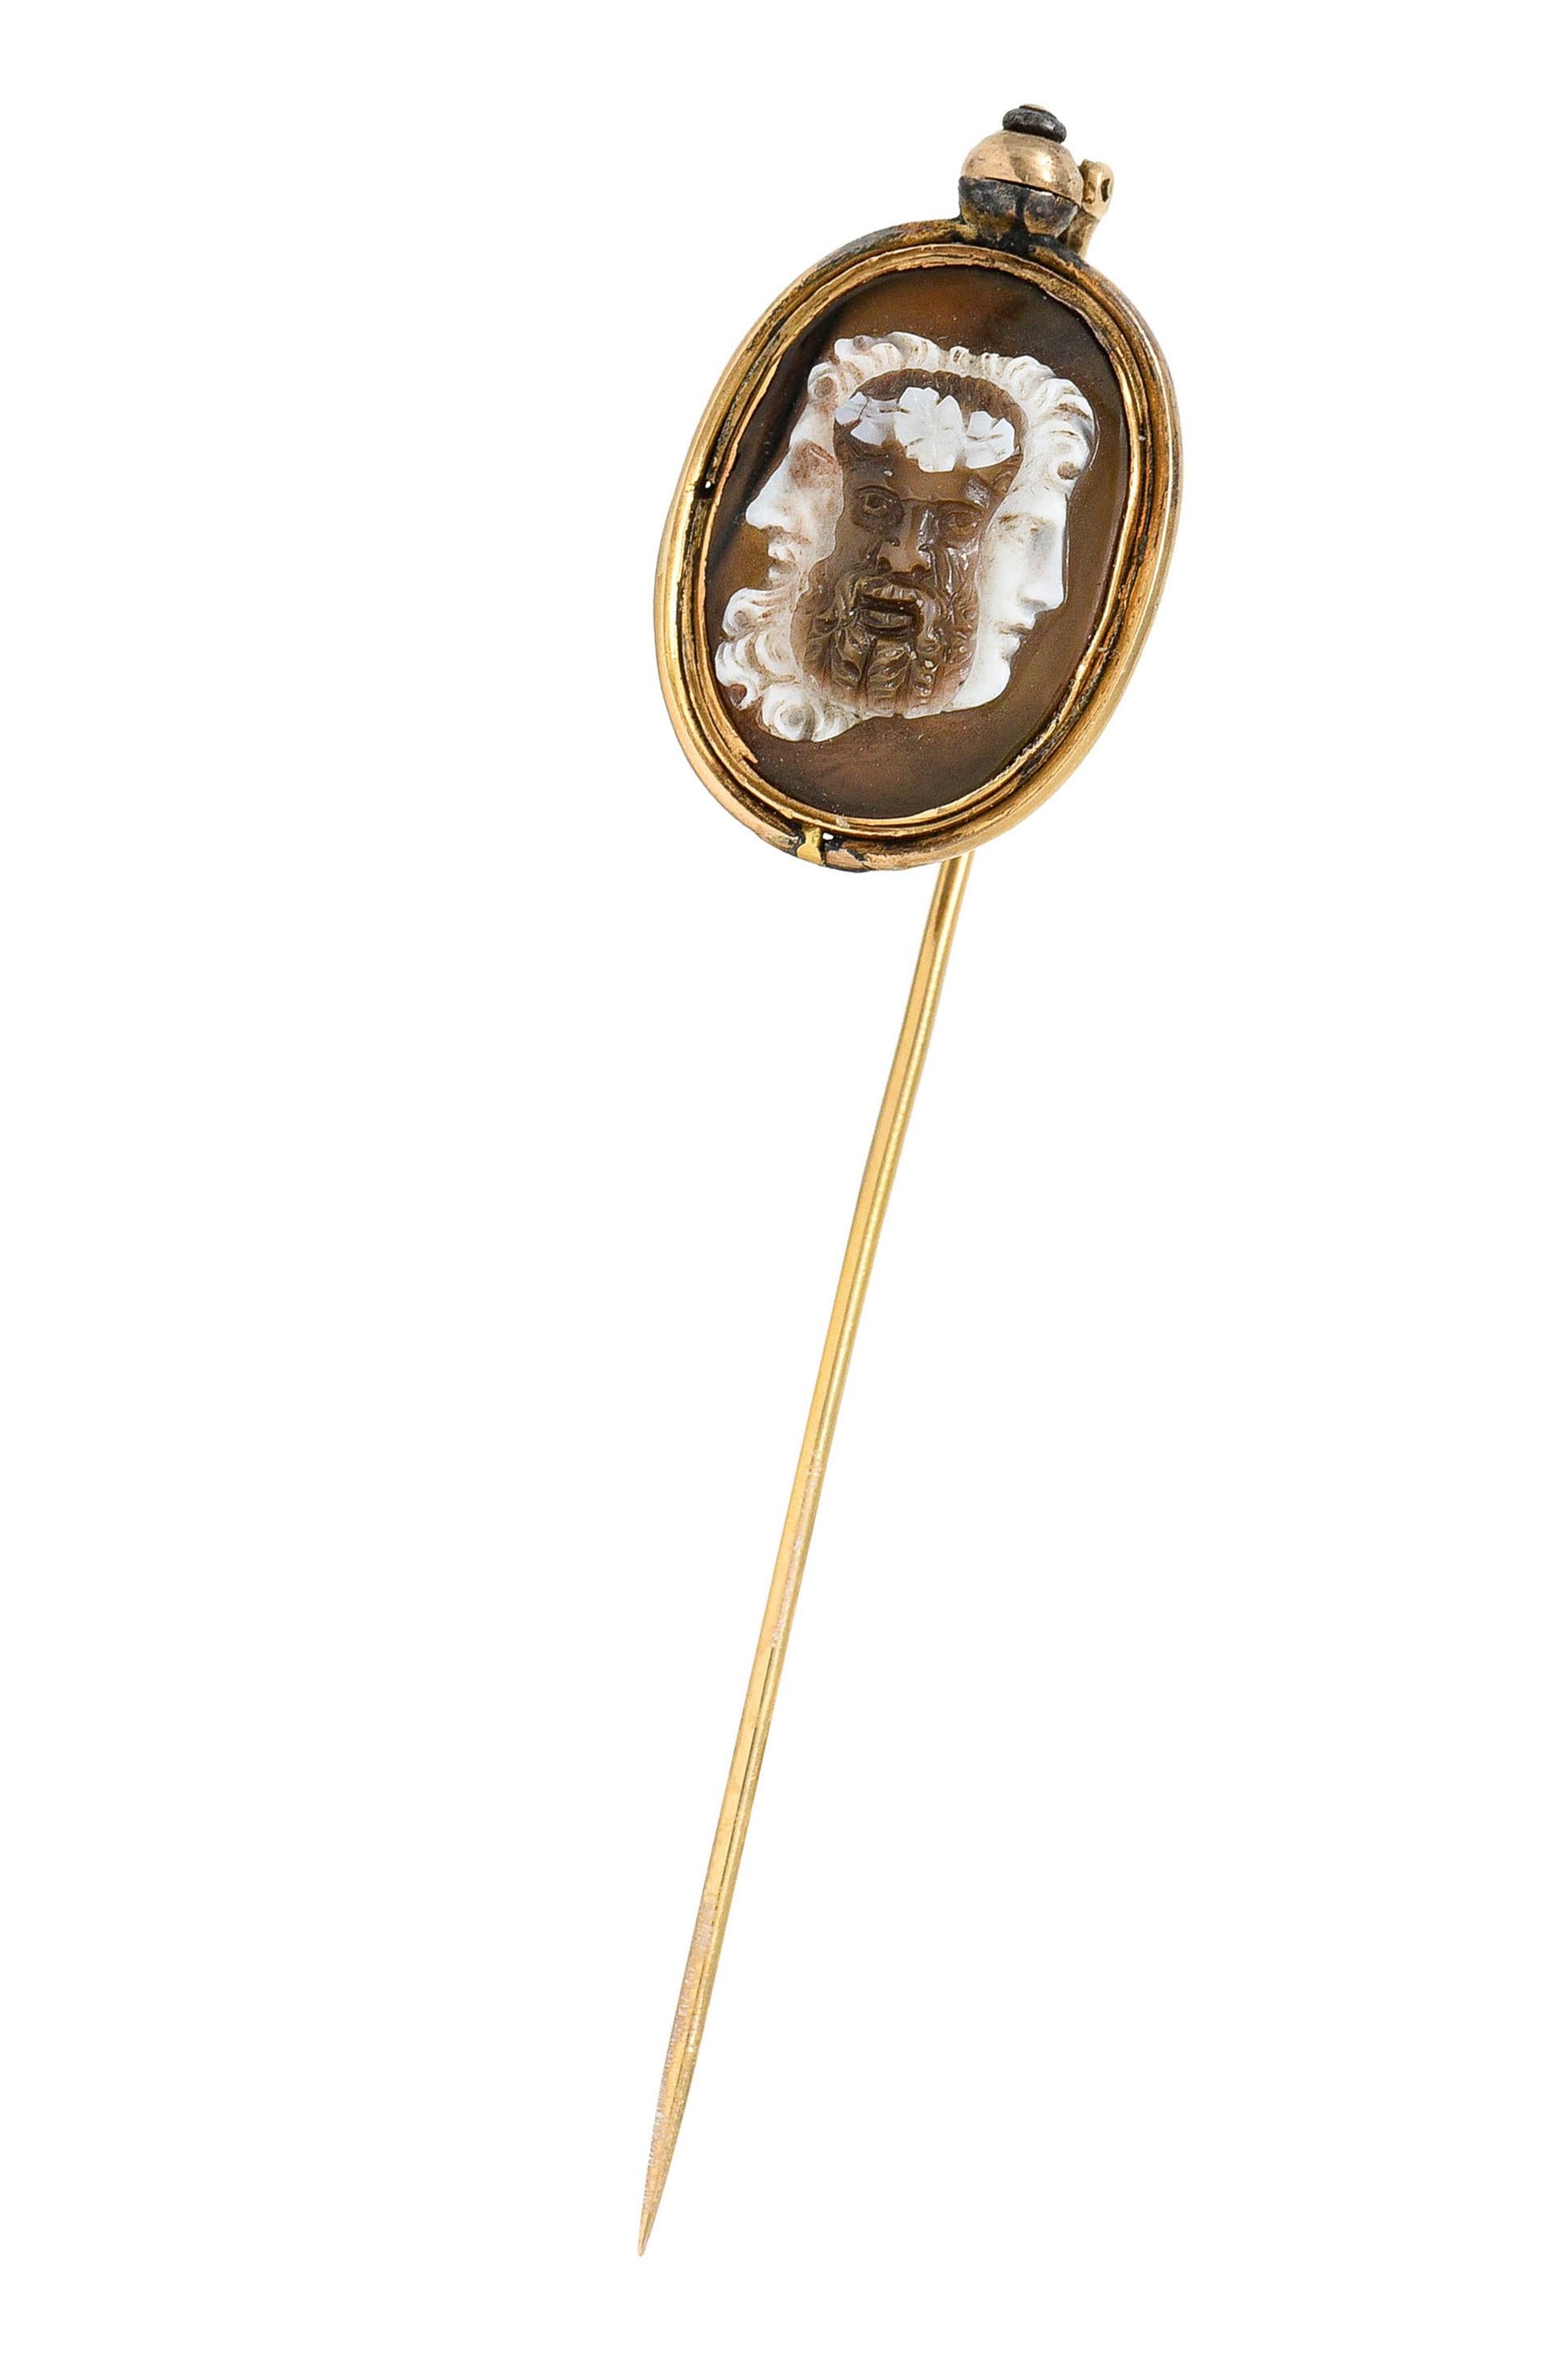 L'épingle à nourrice présente une tablette ovale en agate mesurant environ 16,8 x 11,8 mm

Translucide avec une couleur brune contrastant avec le blanc

Lunette sertie dans un entourage en or qui peut pivoter et tourner de manière unique pour